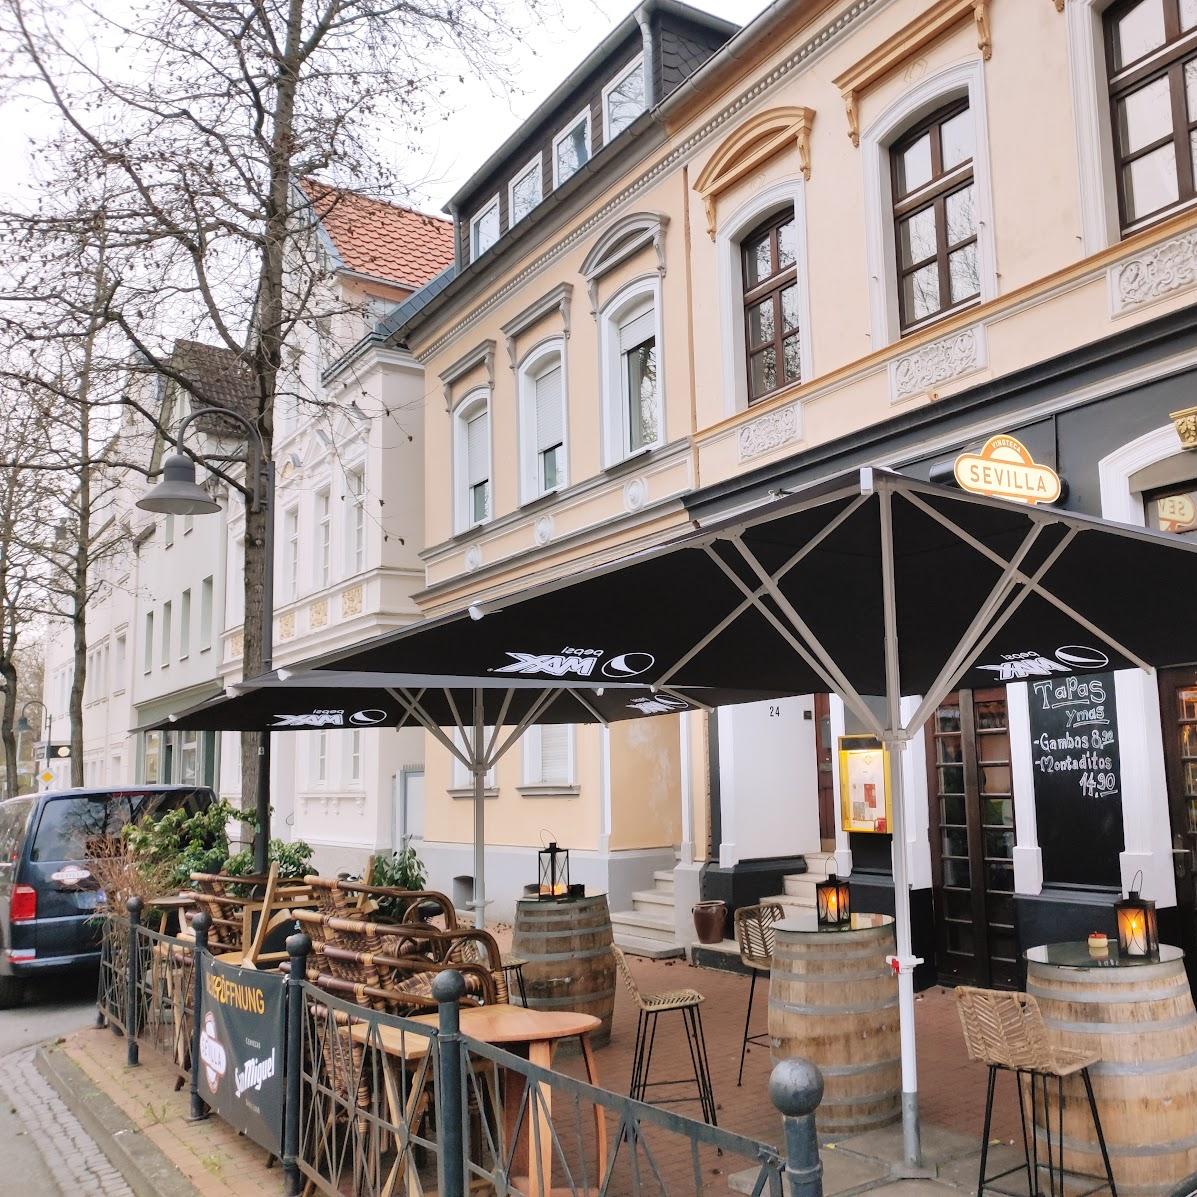 Restaurant "Vinoteca Sevilla Bar" in Paderborn